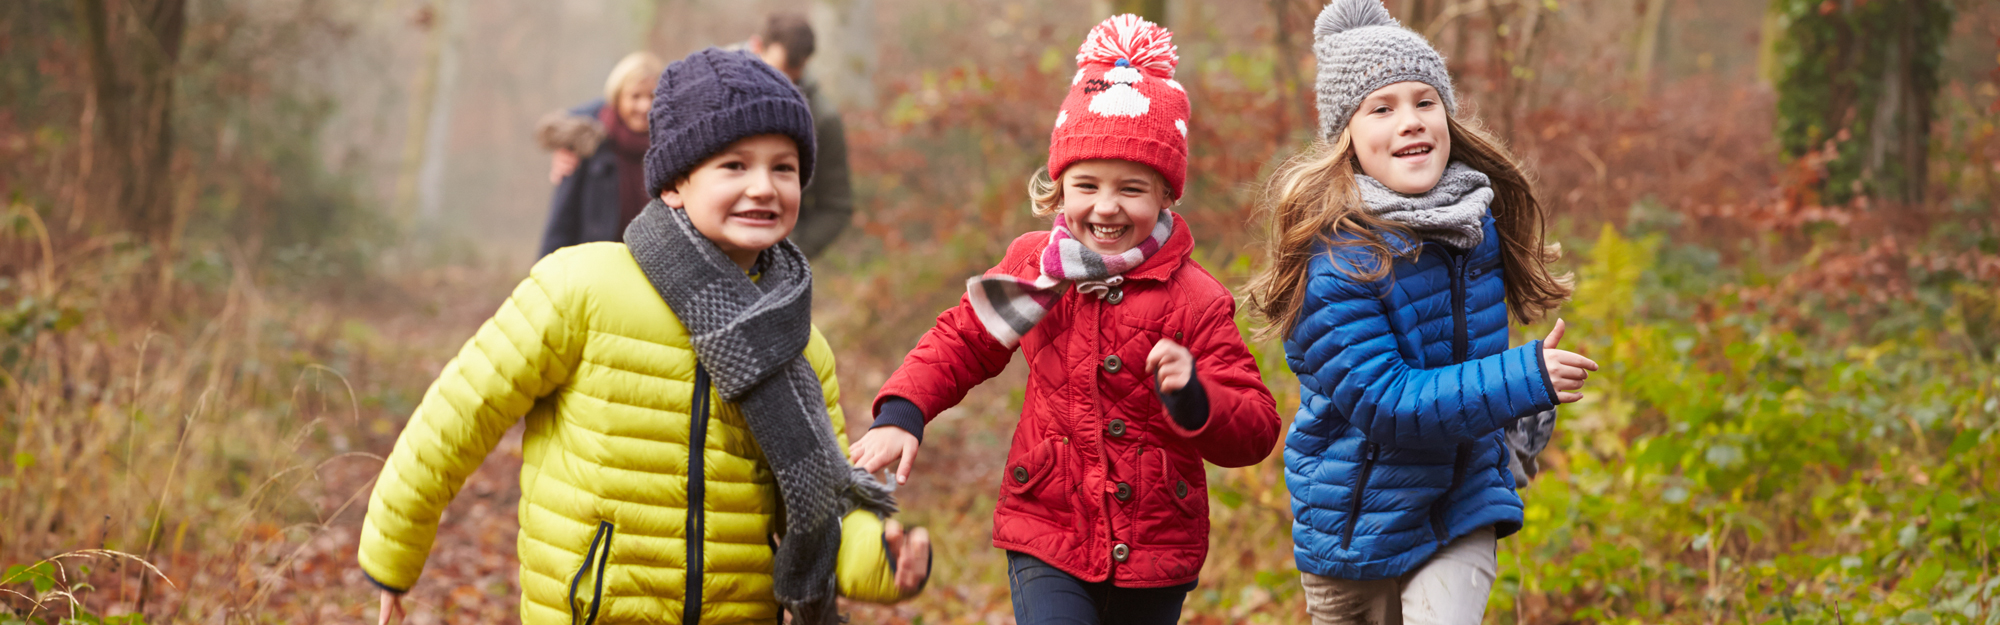 Tre glada barn springer i höstskogen